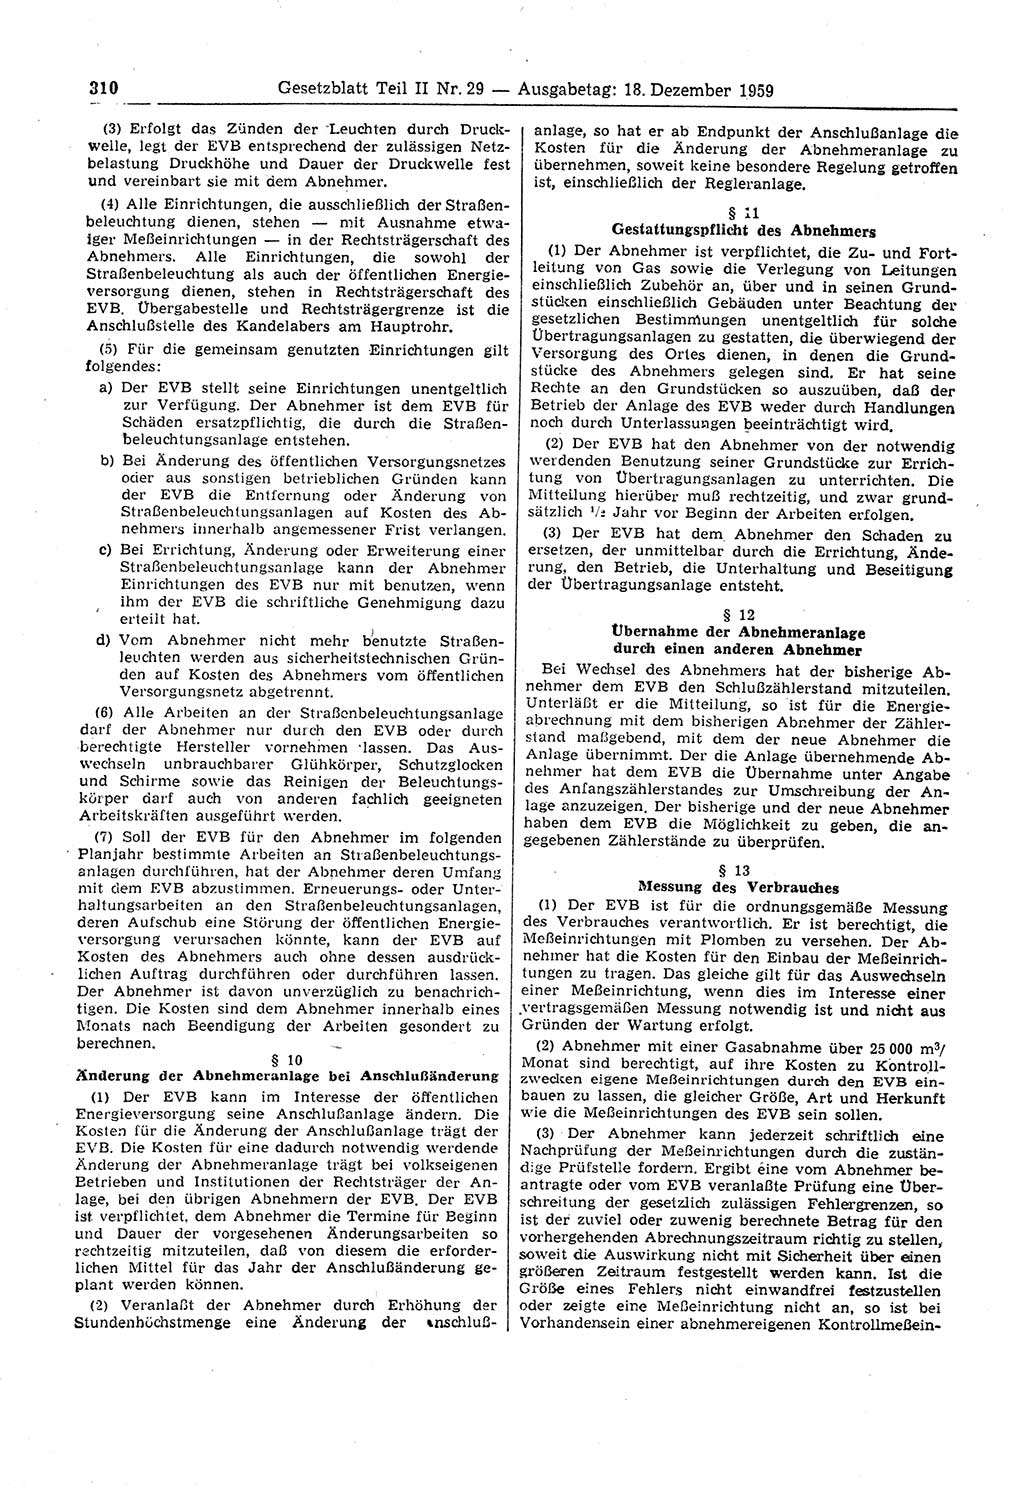 Gesetzblatt (GBl.) der Deutschen Demokratischen Republik (DDR) Teil ⅠⅠ 1959, Seite 310 (GBl. DDR ⅠⅠ 1959, S. 310)